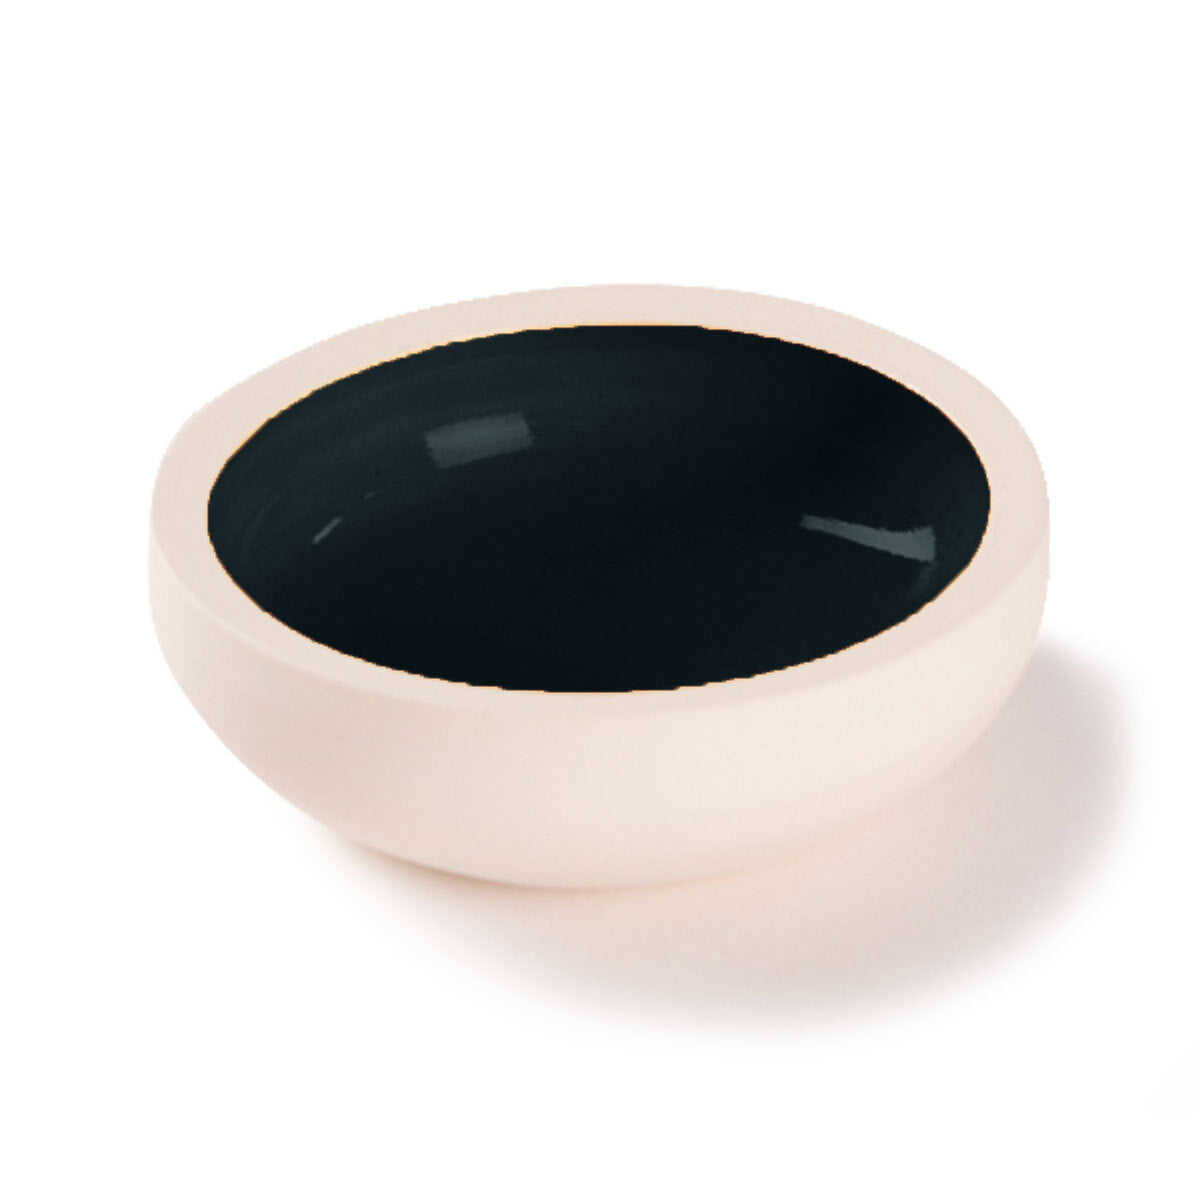 Ceramic Salt Bowl